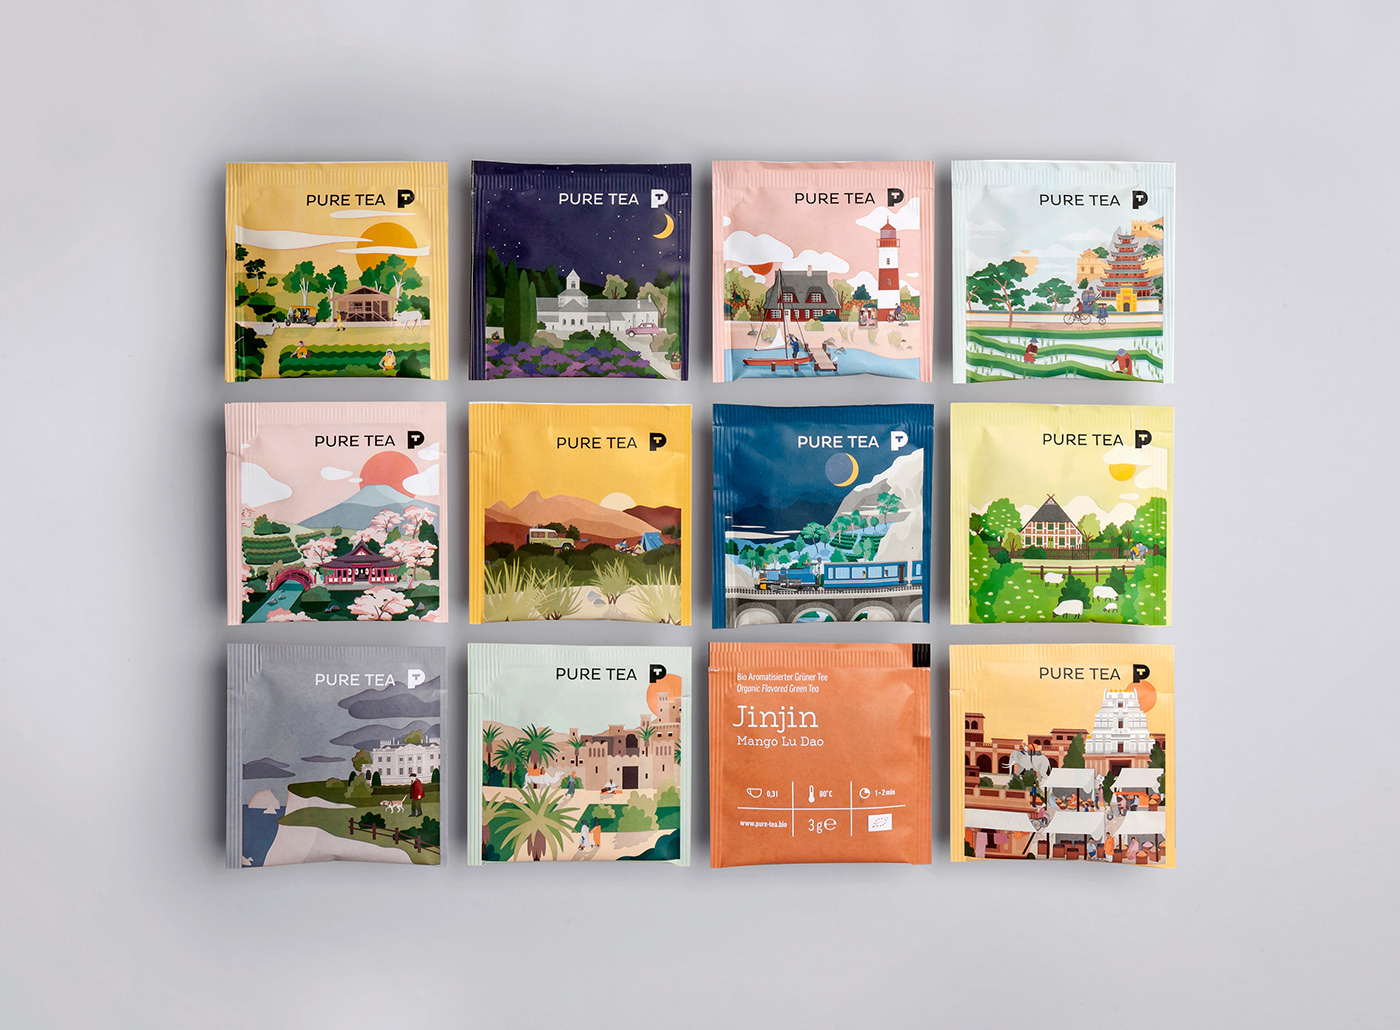 德国有机茶品牌Pure Tea的包装和插画设计